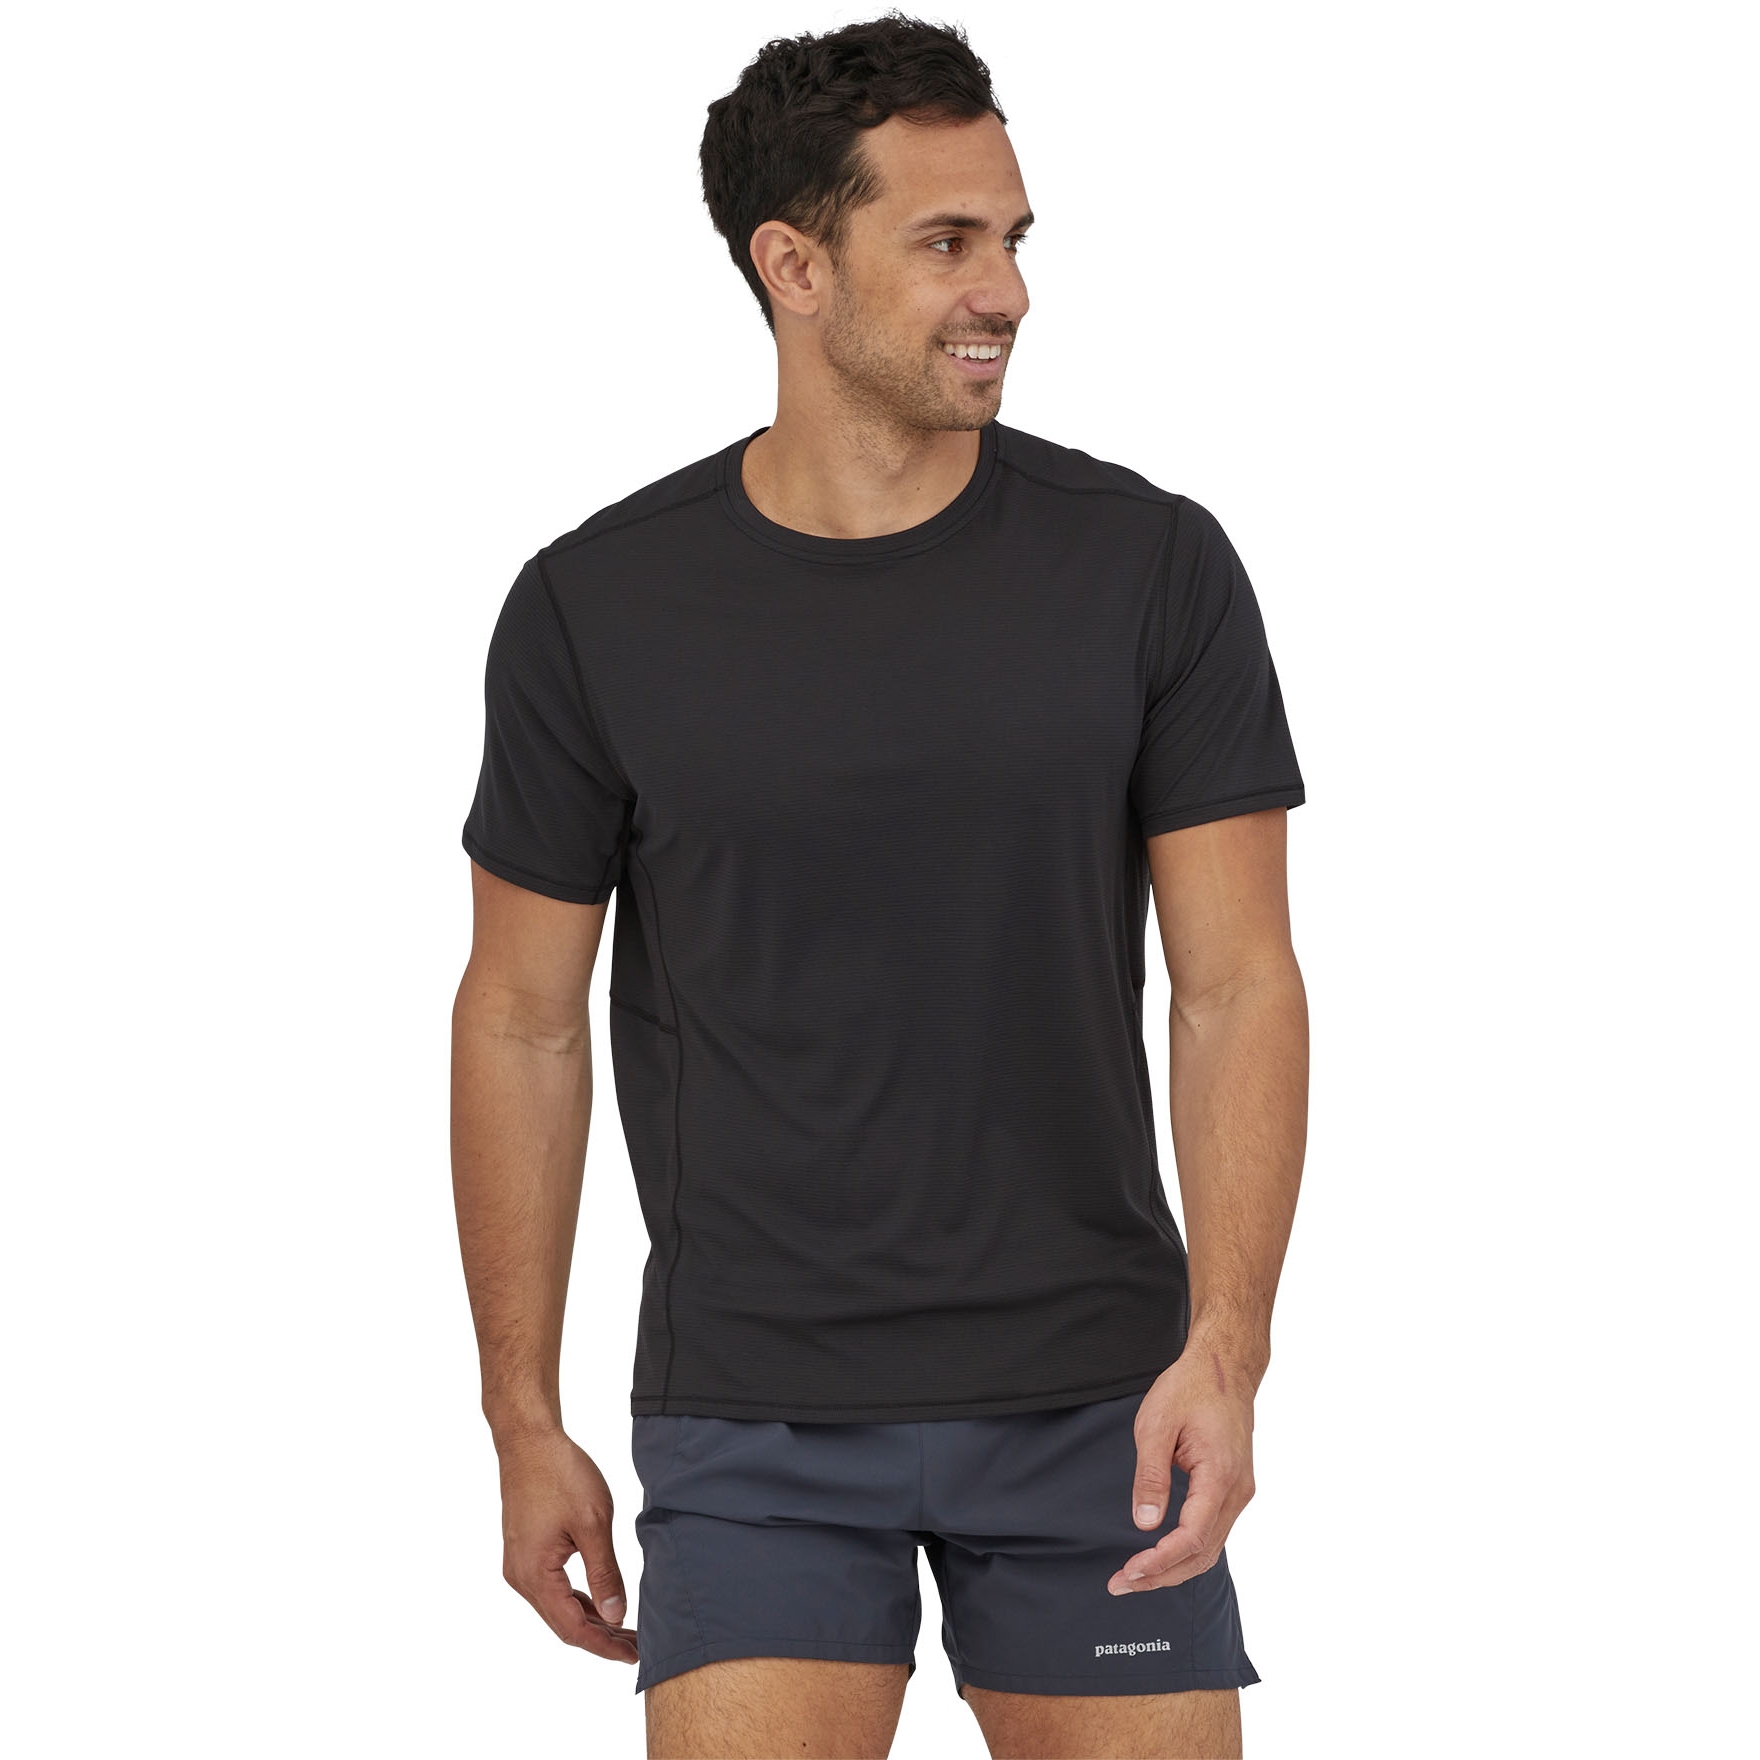 Produktbild von Patagonia Capilene Cool Lightweight T-Shirt Herren - Schwarz